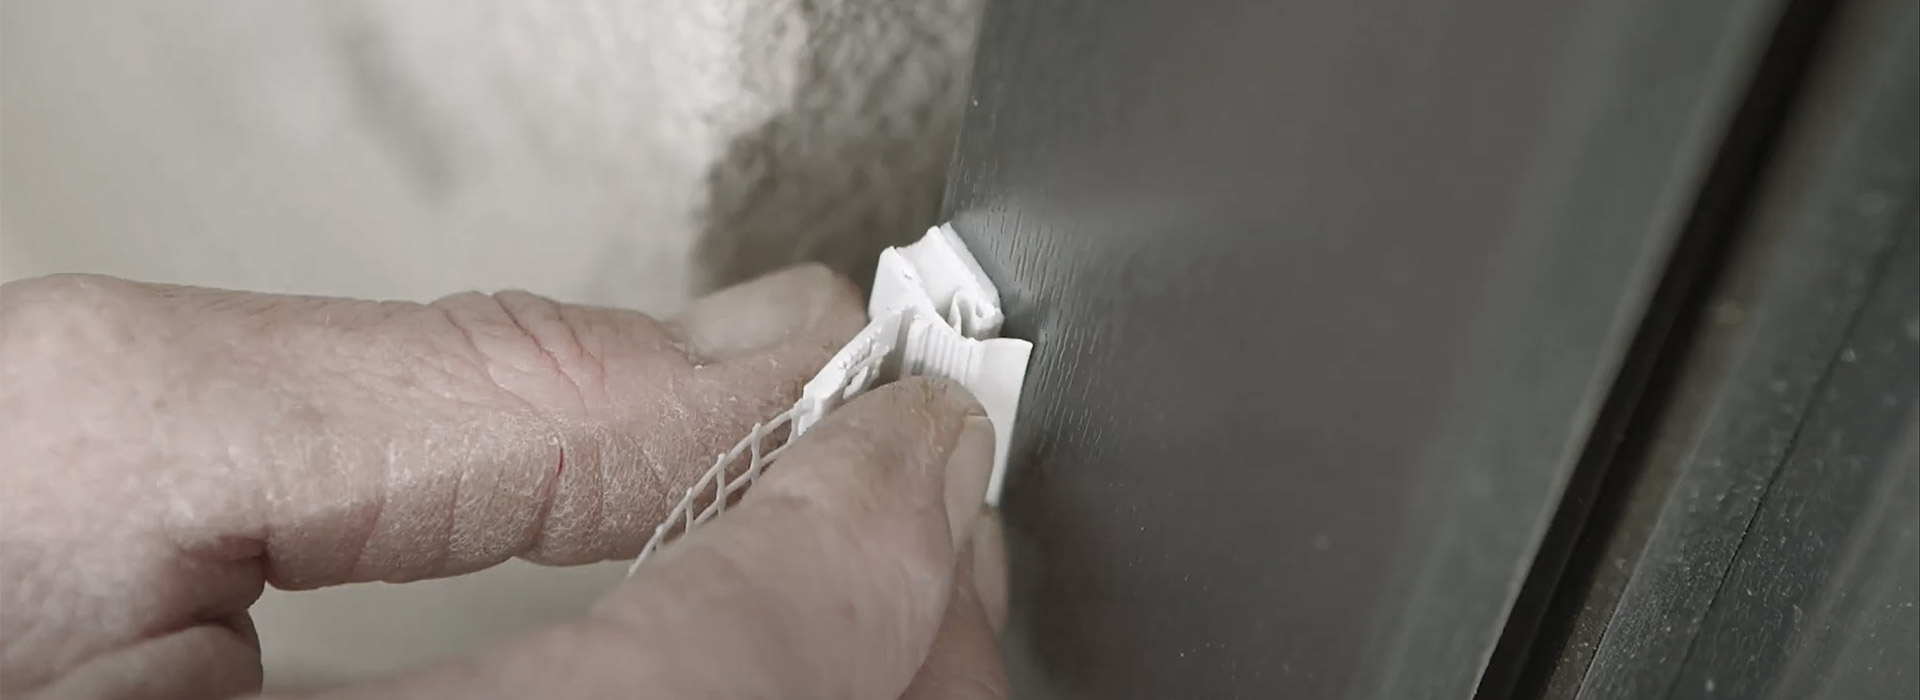 Klebeprofile sind Produkte, die über ein selbstklebendes Schaumband auf den Untergrund z. B. den Fenster- oder Türrahmen aufgeklebt werden. 